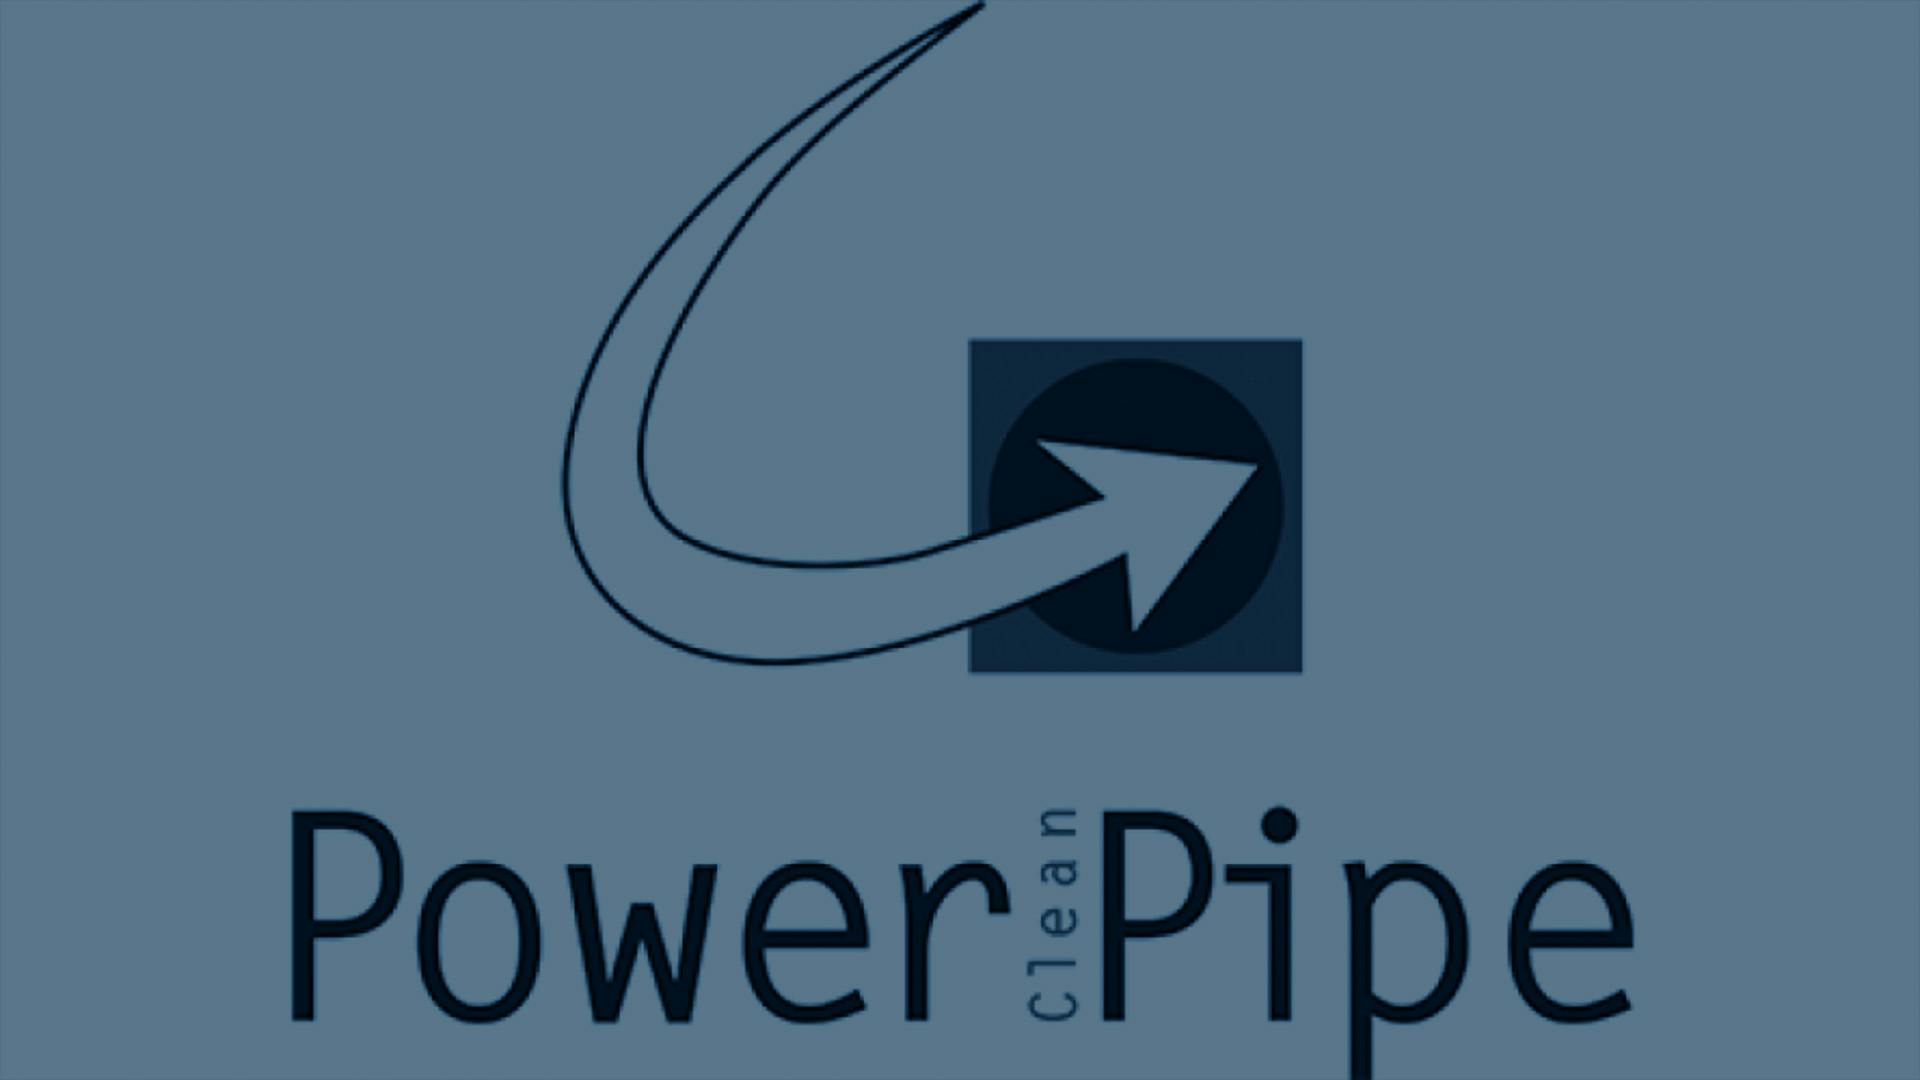 Cover Image for Power Clean Pipe AS fusjoneres med TT-Teknikk AS